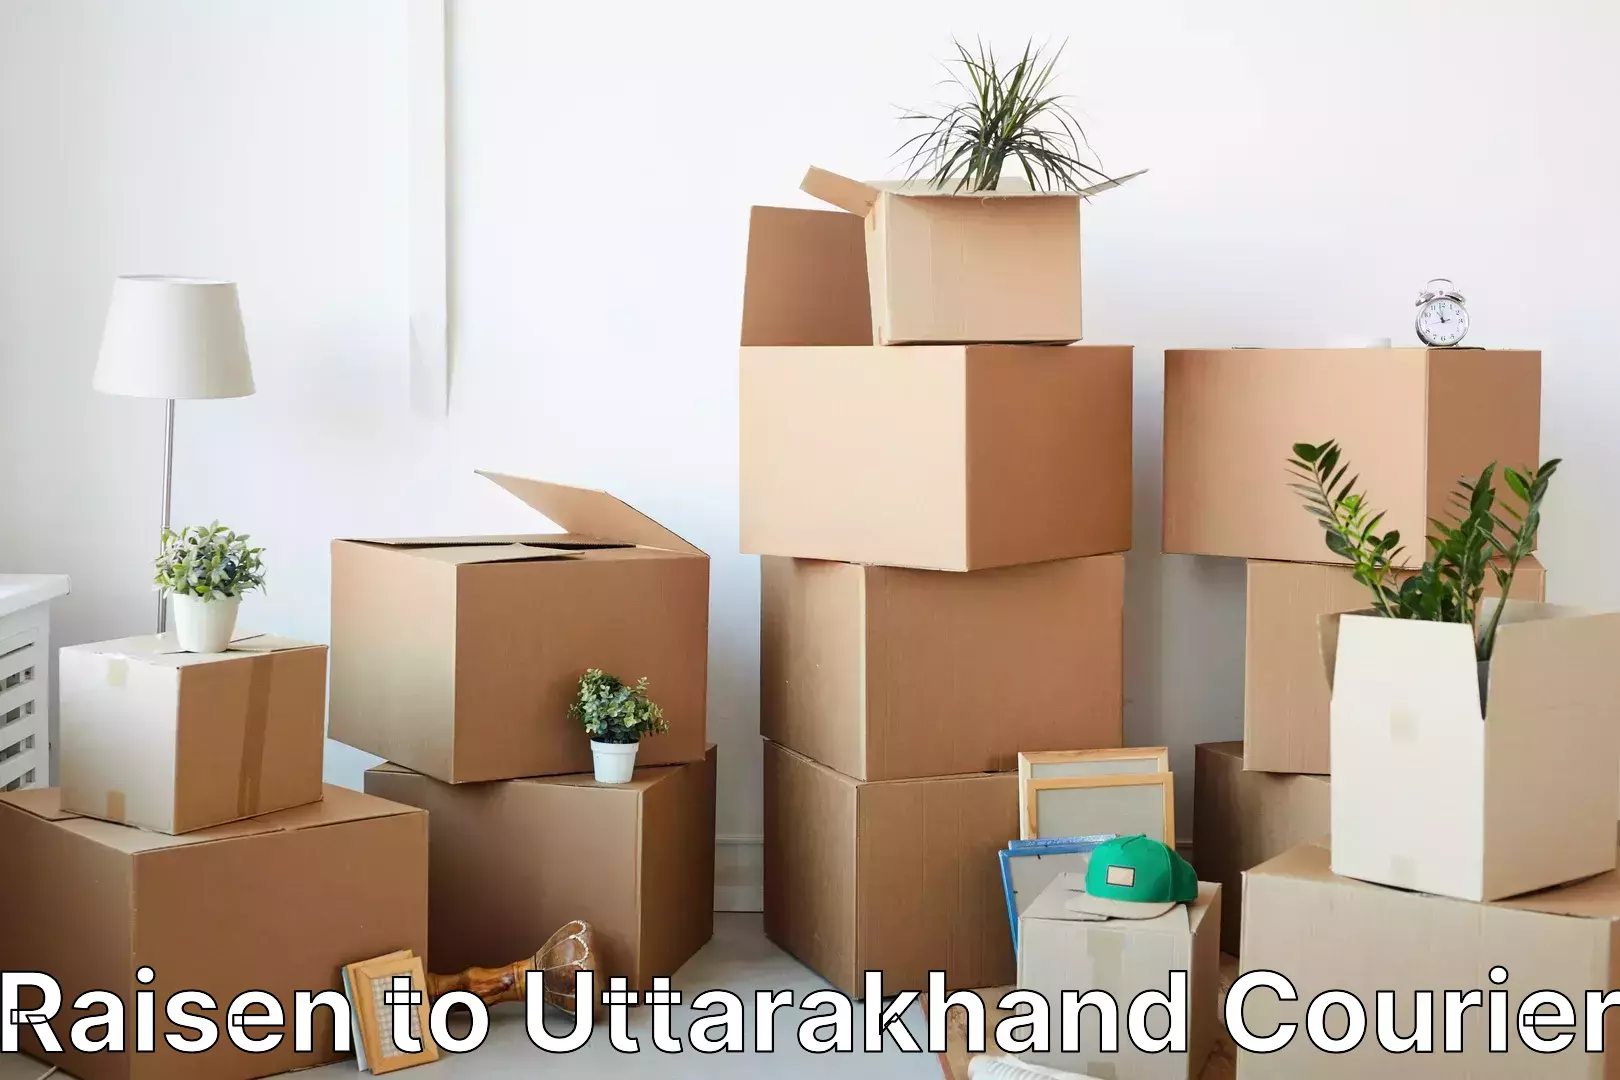 International courier networks Raisen to Uttarakhand